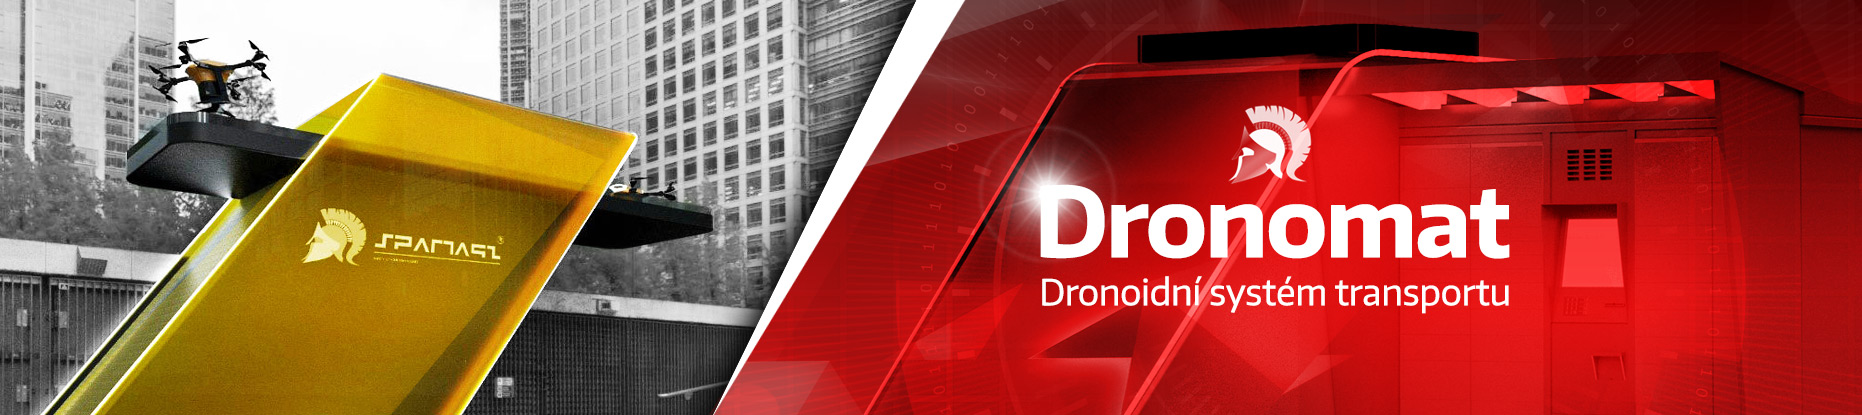 Dronomat - Dronoidní systém transportu